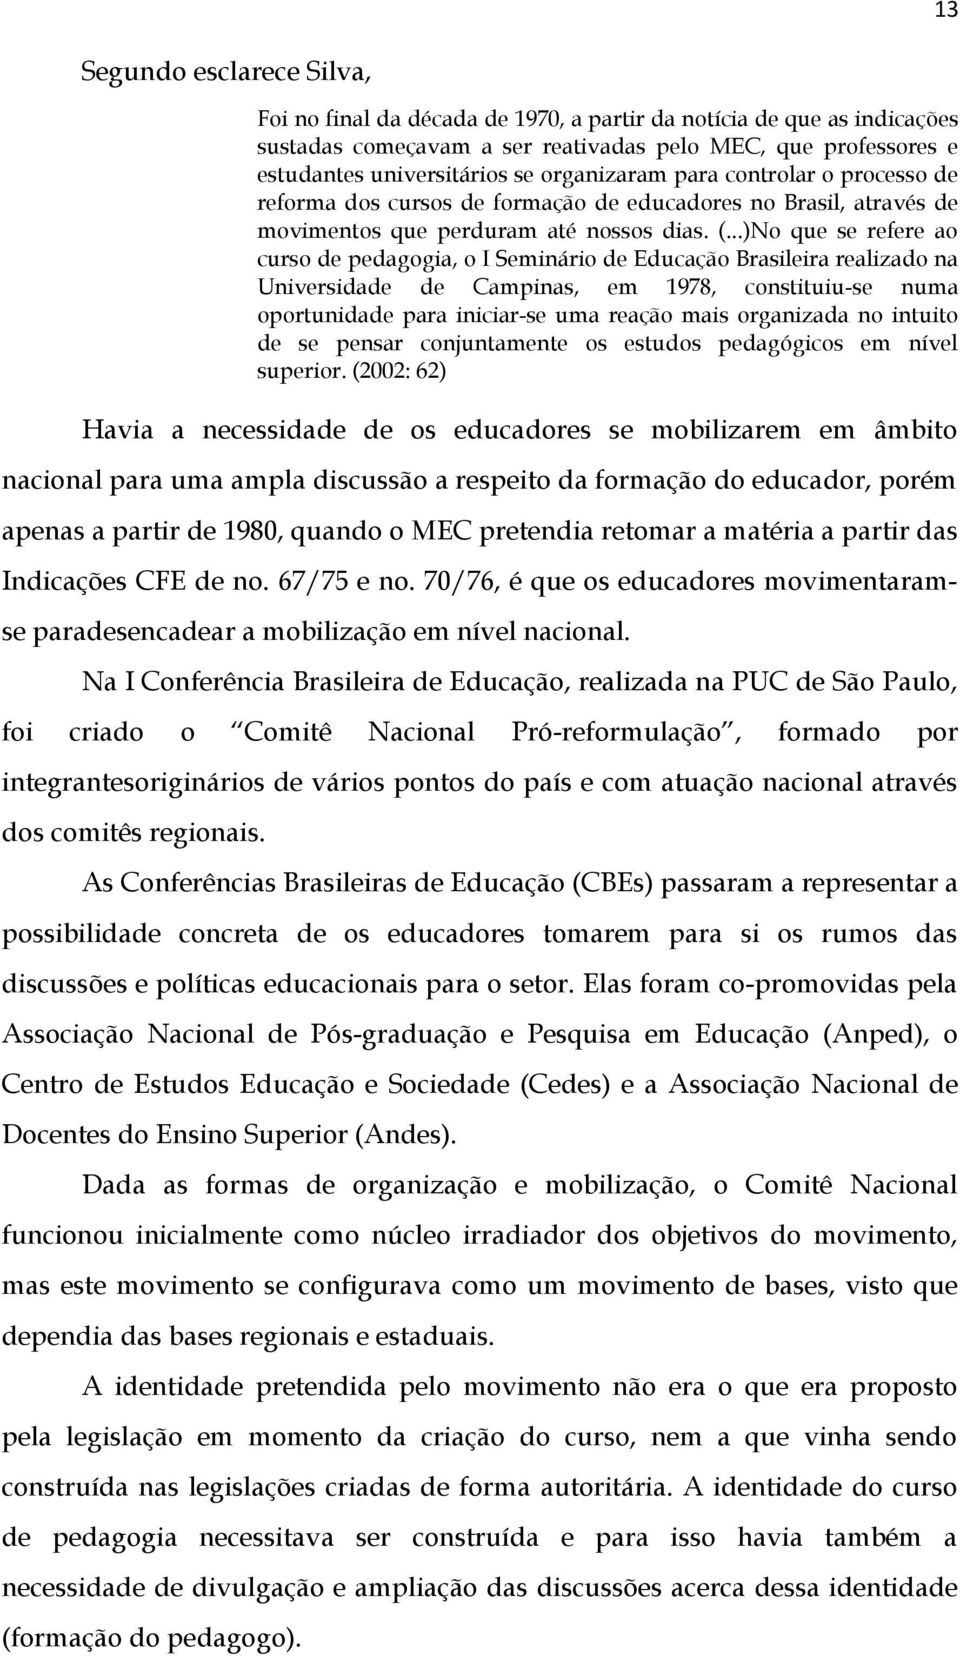 ..)No que se refere ao curso de pedagogia, o I Seminário de Educação Brasileira realizado na Universidade de Campinas, em 1978, constituiu-se numa oportunidade para iniciar-se uma reação mais